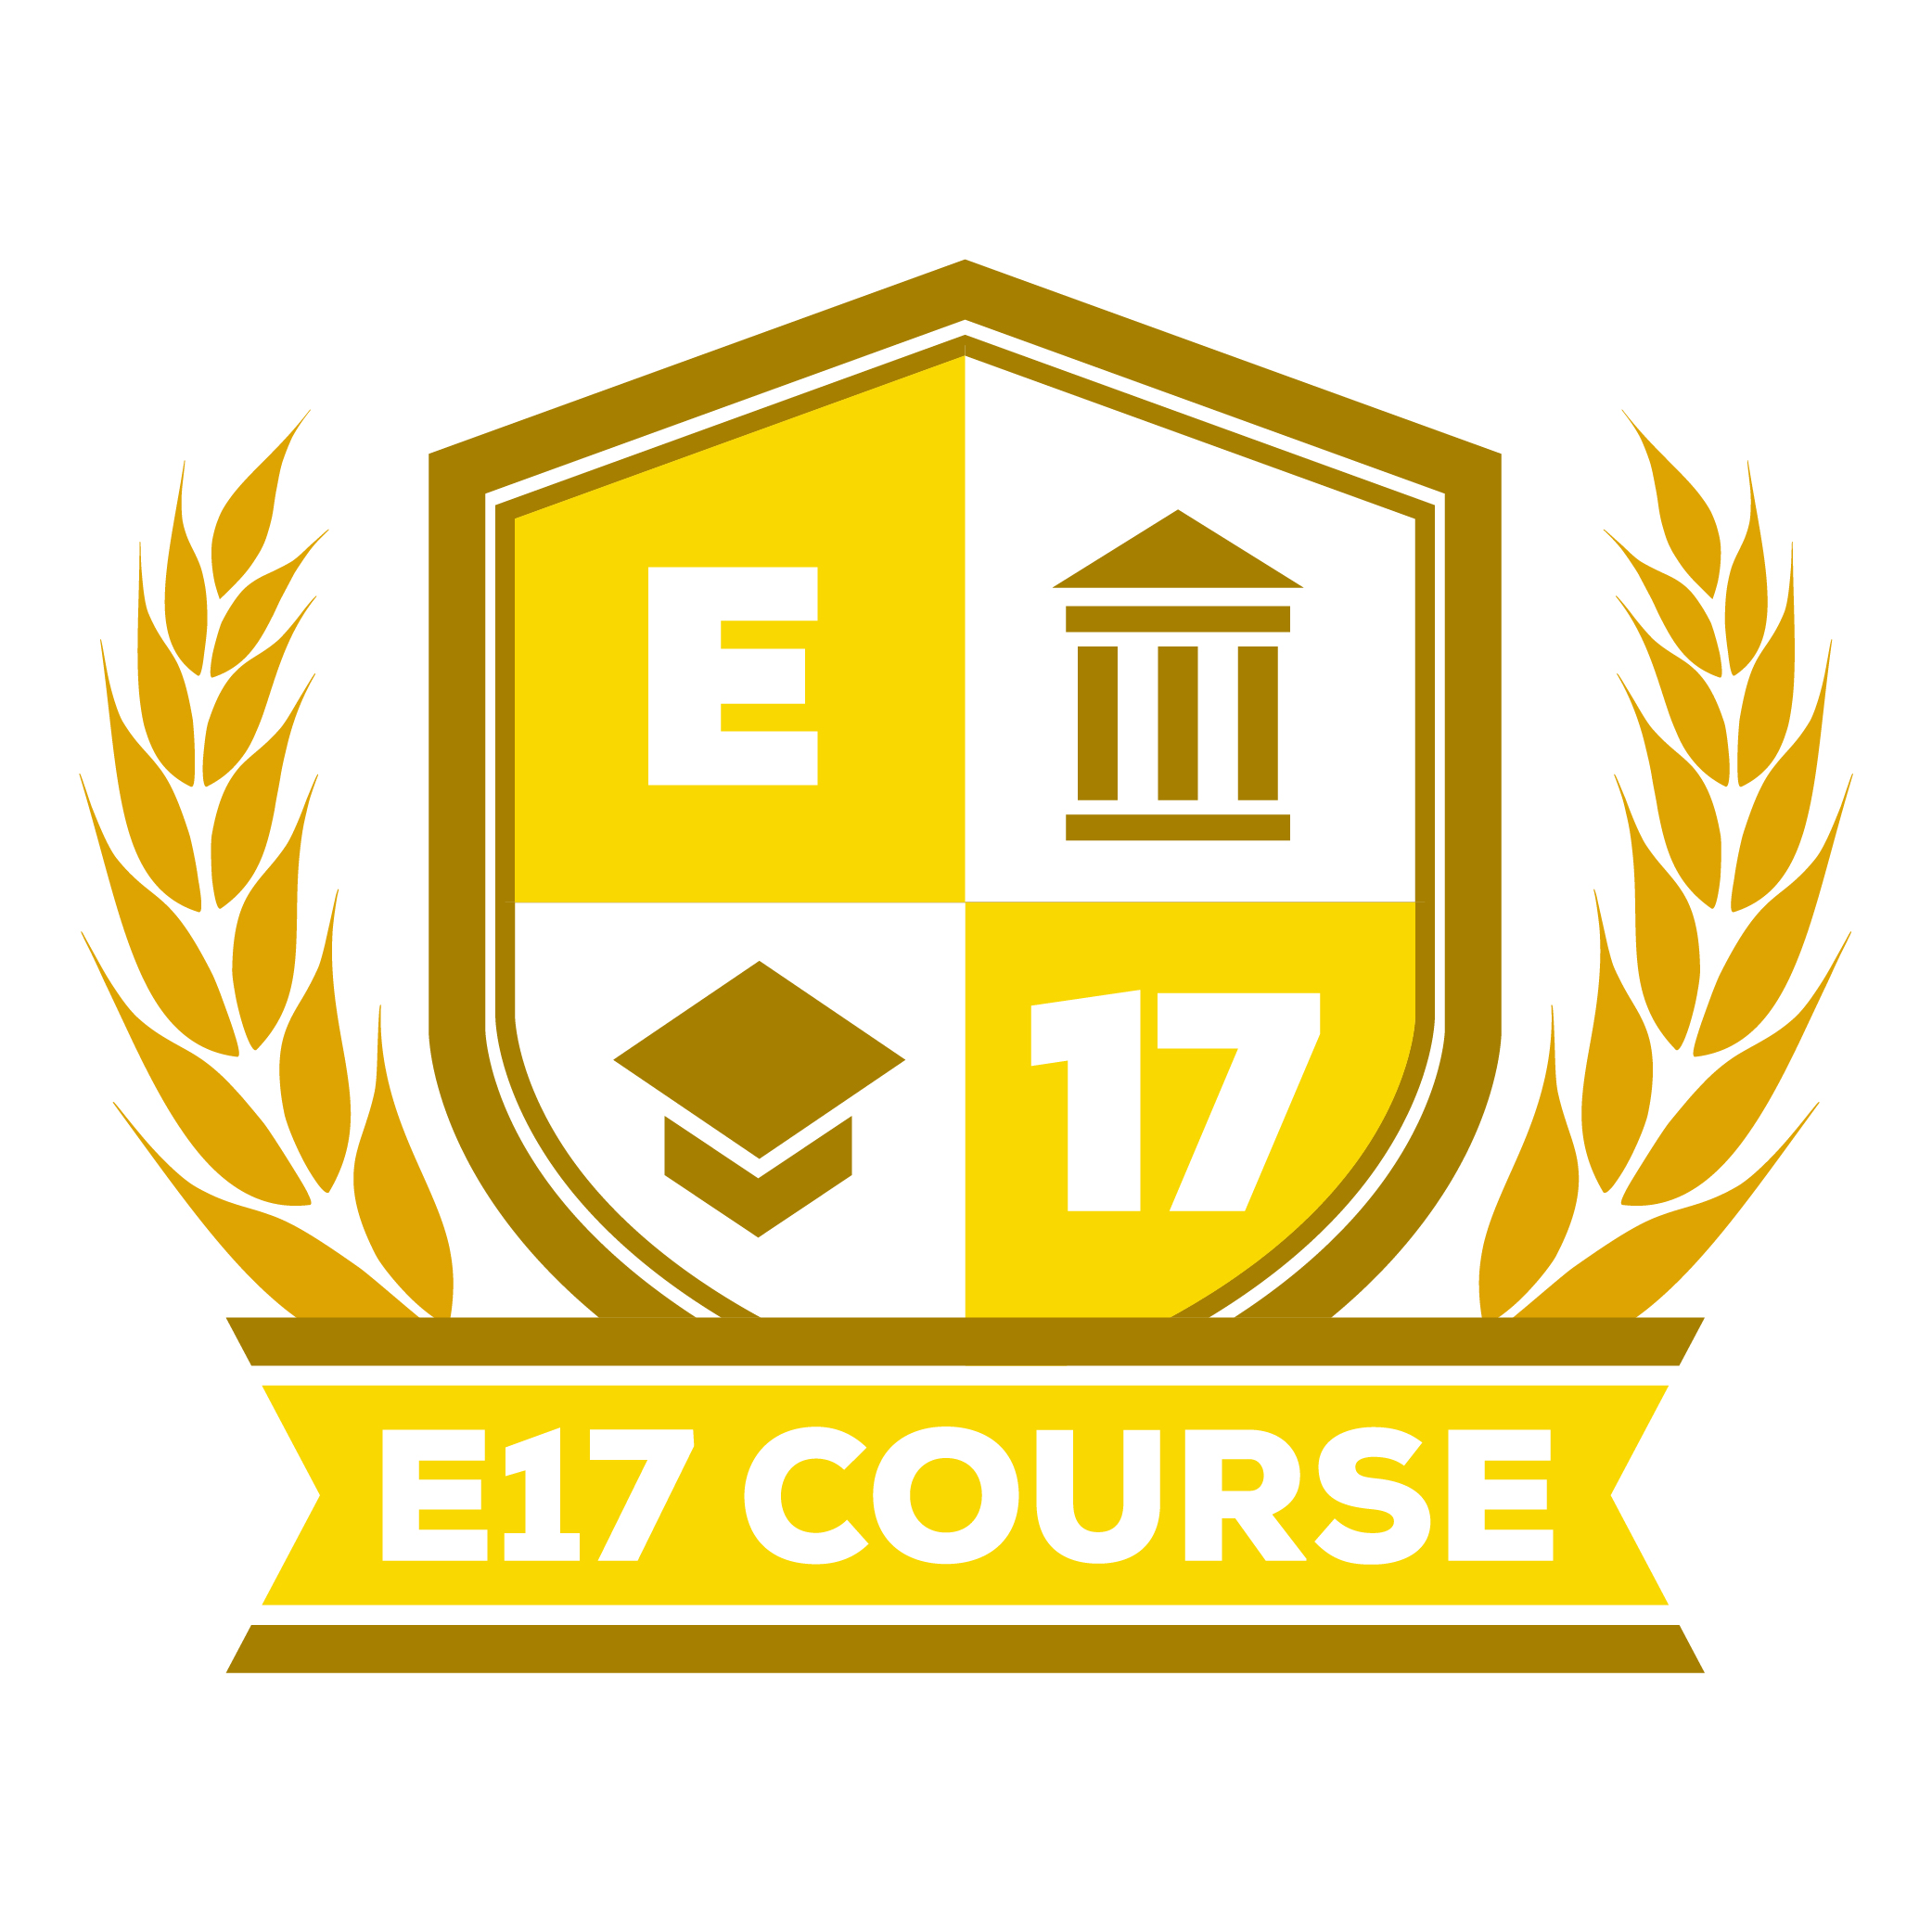 E17 Course